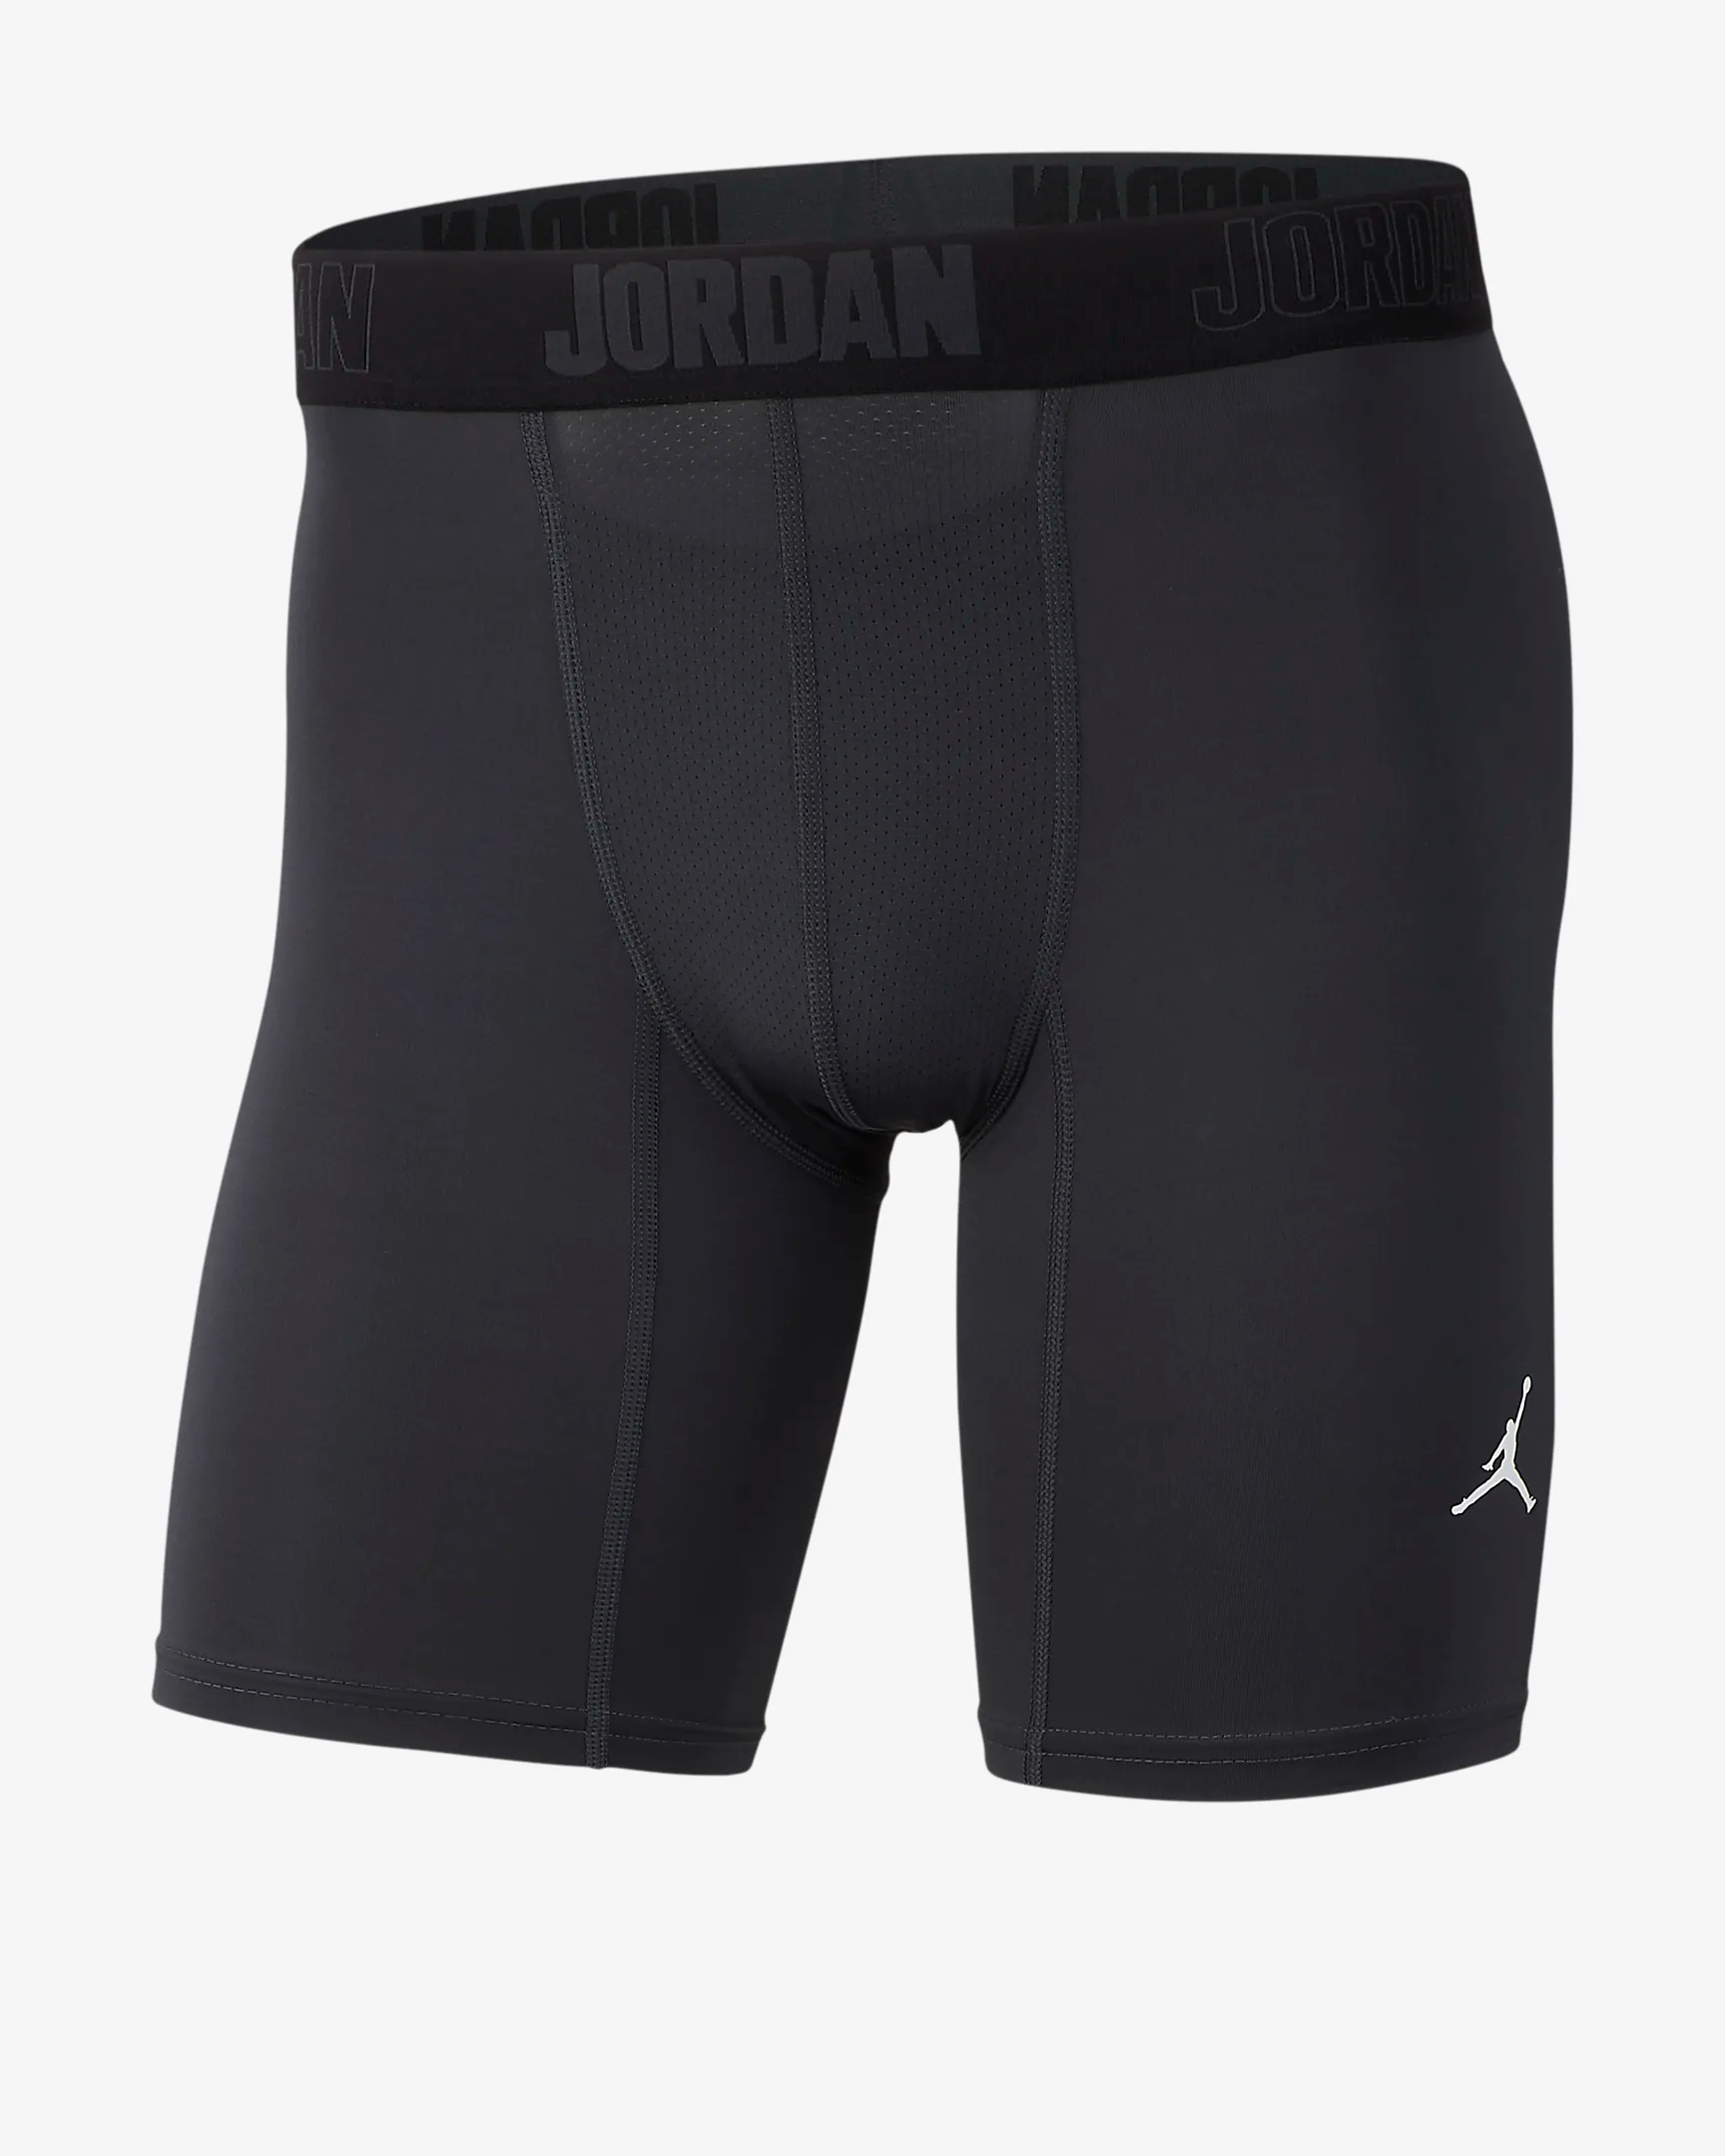 air jordan compression shorts